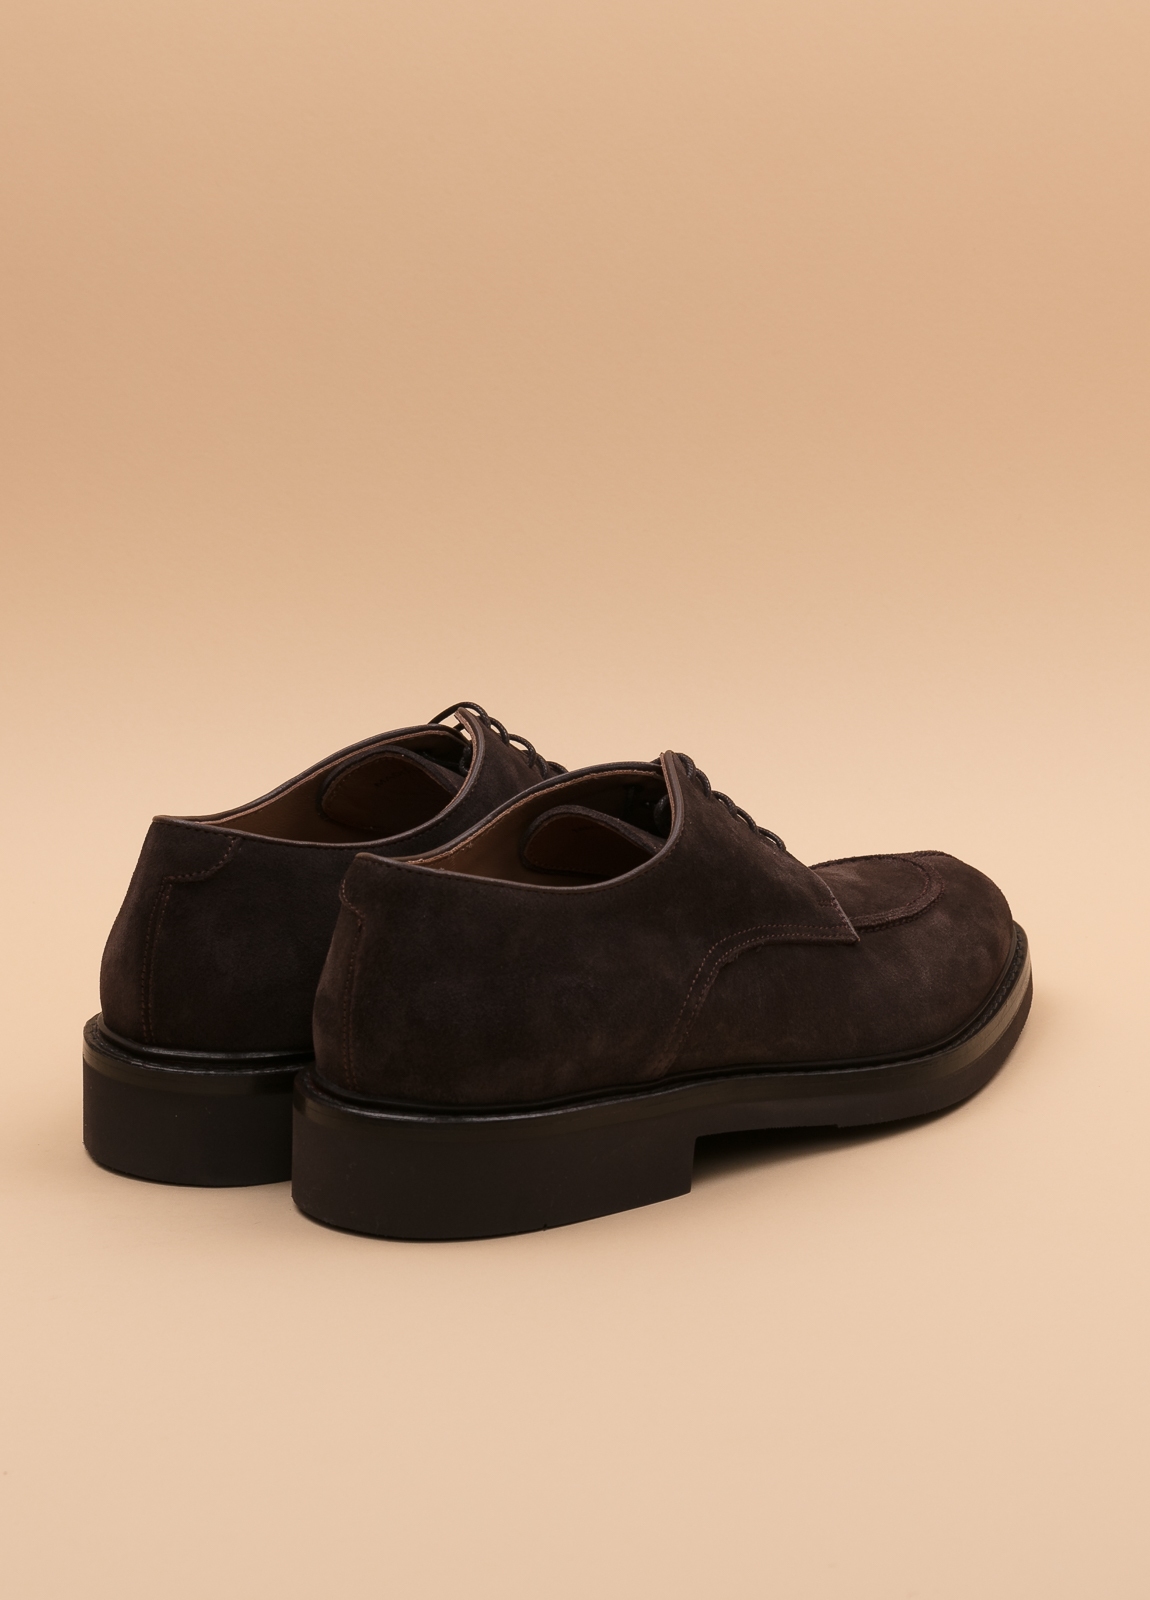 Zapato sport wear furest colección marrón oscuro - Ítem1